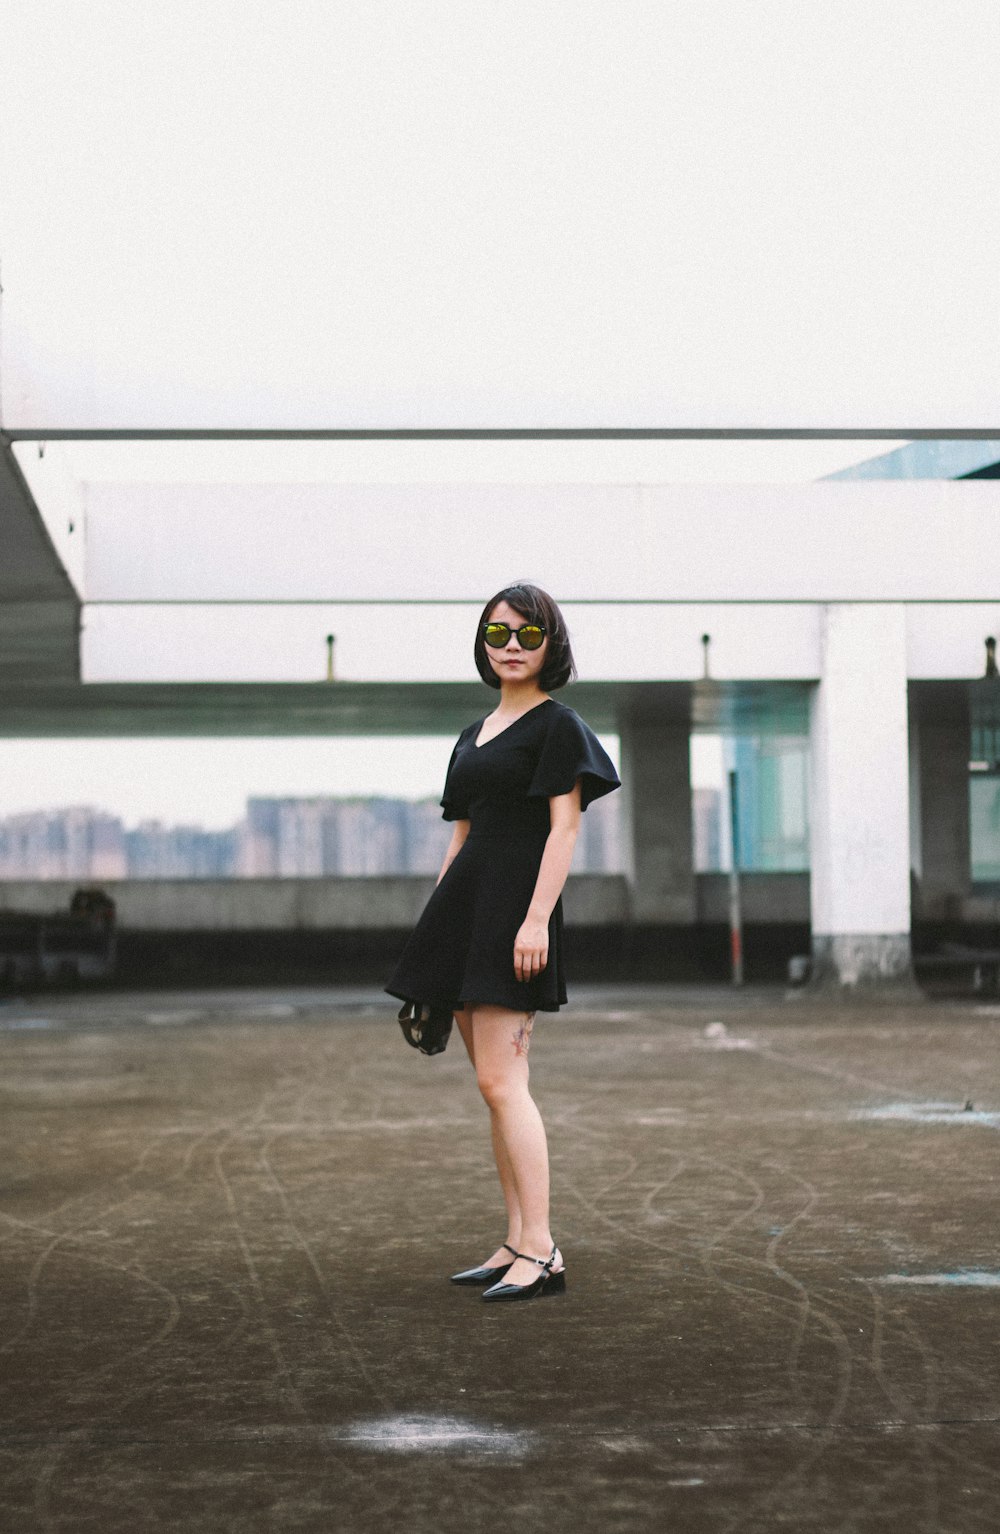 Femme en minirobe noire et lunettes de soleil noires debout dans la rue